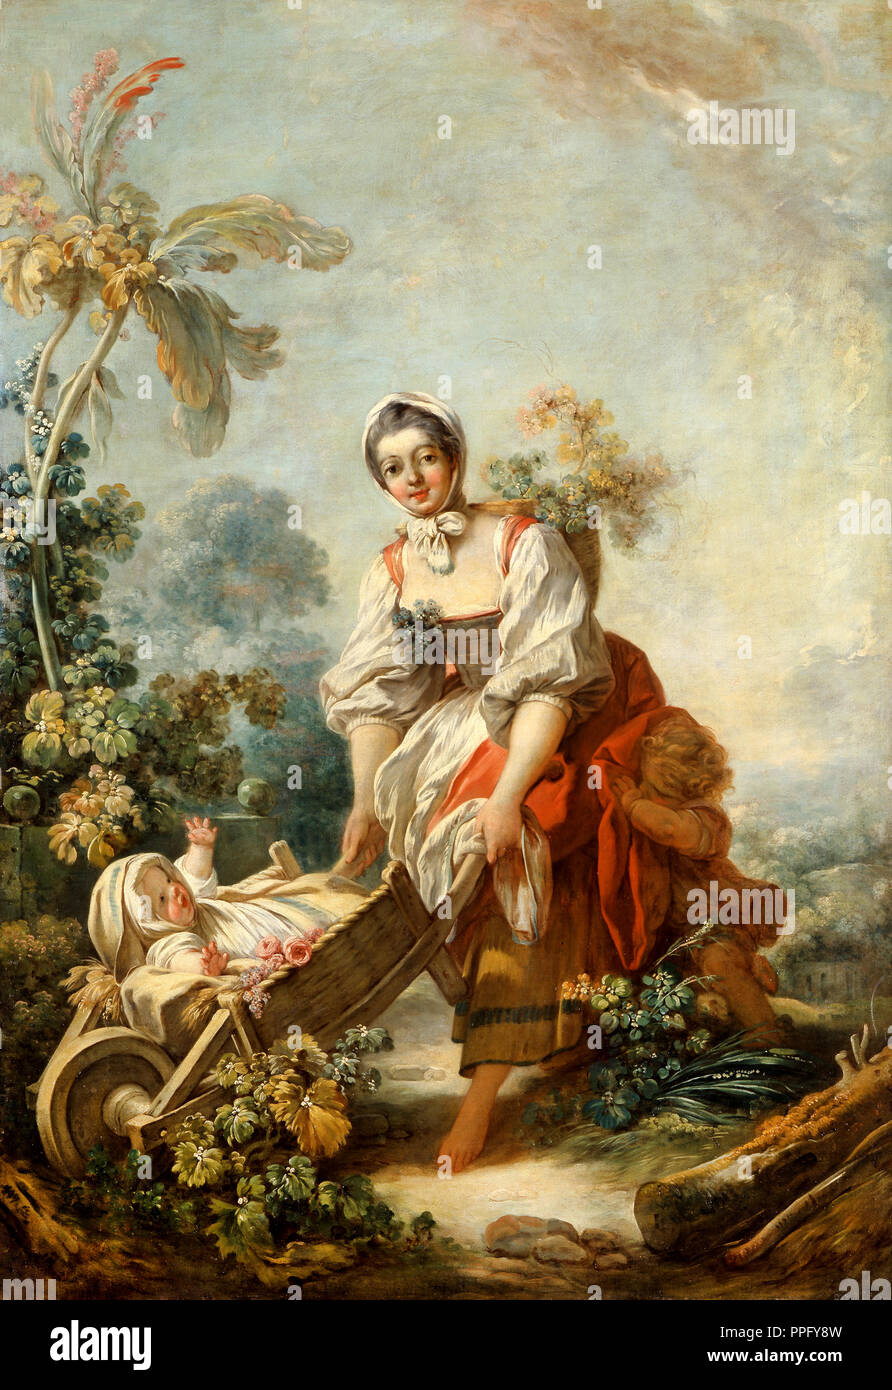 Jean-Honore Fragonard, die Freuden der Mutterschaft. Circa 1752. Öl auf Leinwand. Indianapolis Museum of Art, USA. s Stockfoto